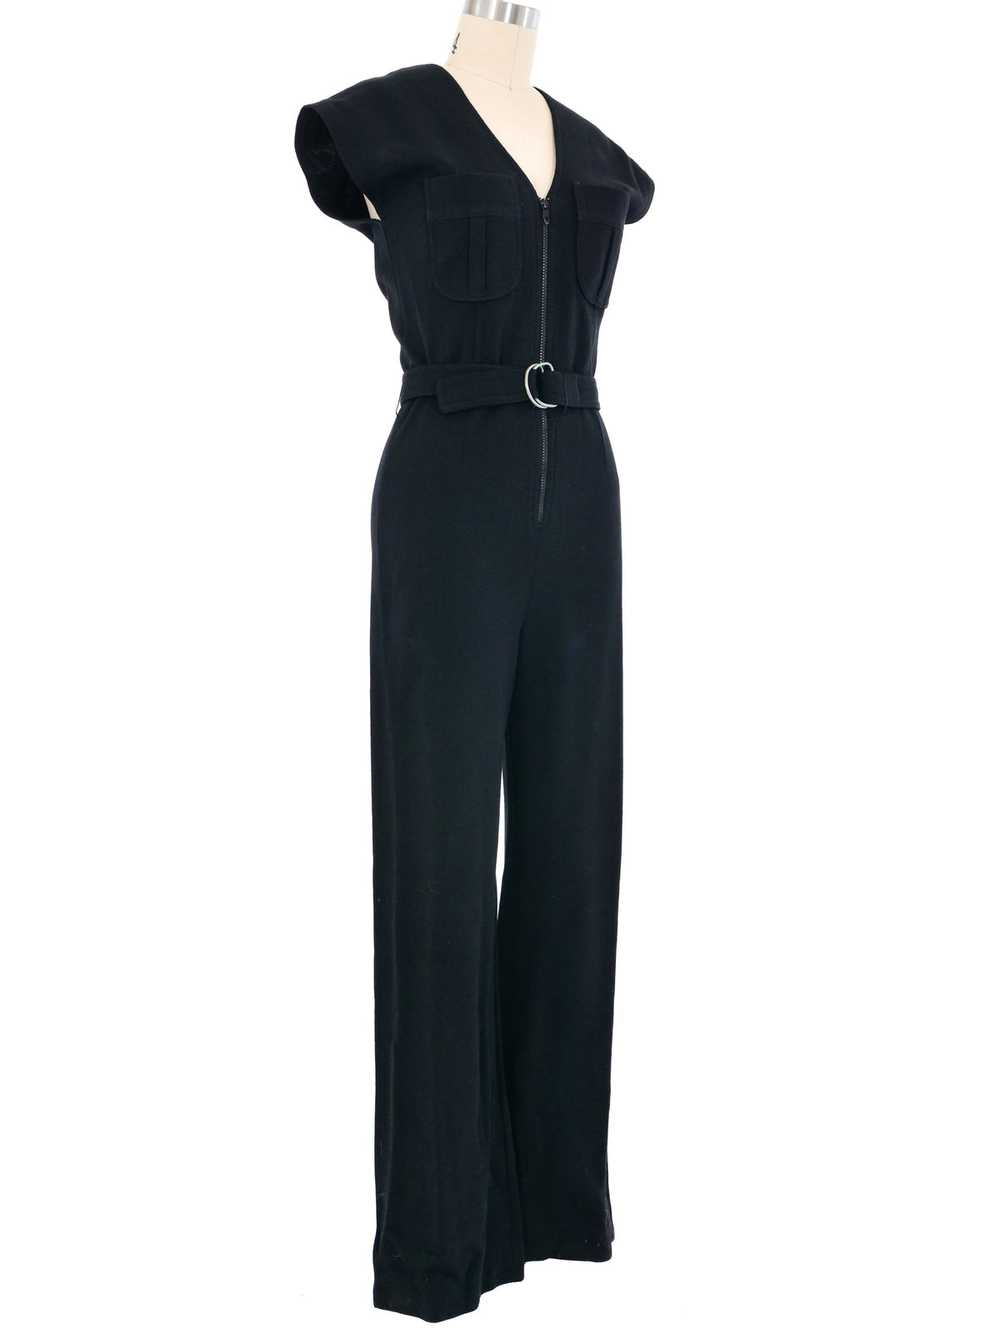 1970s Black Knit Belted Jumpsuit - image 3